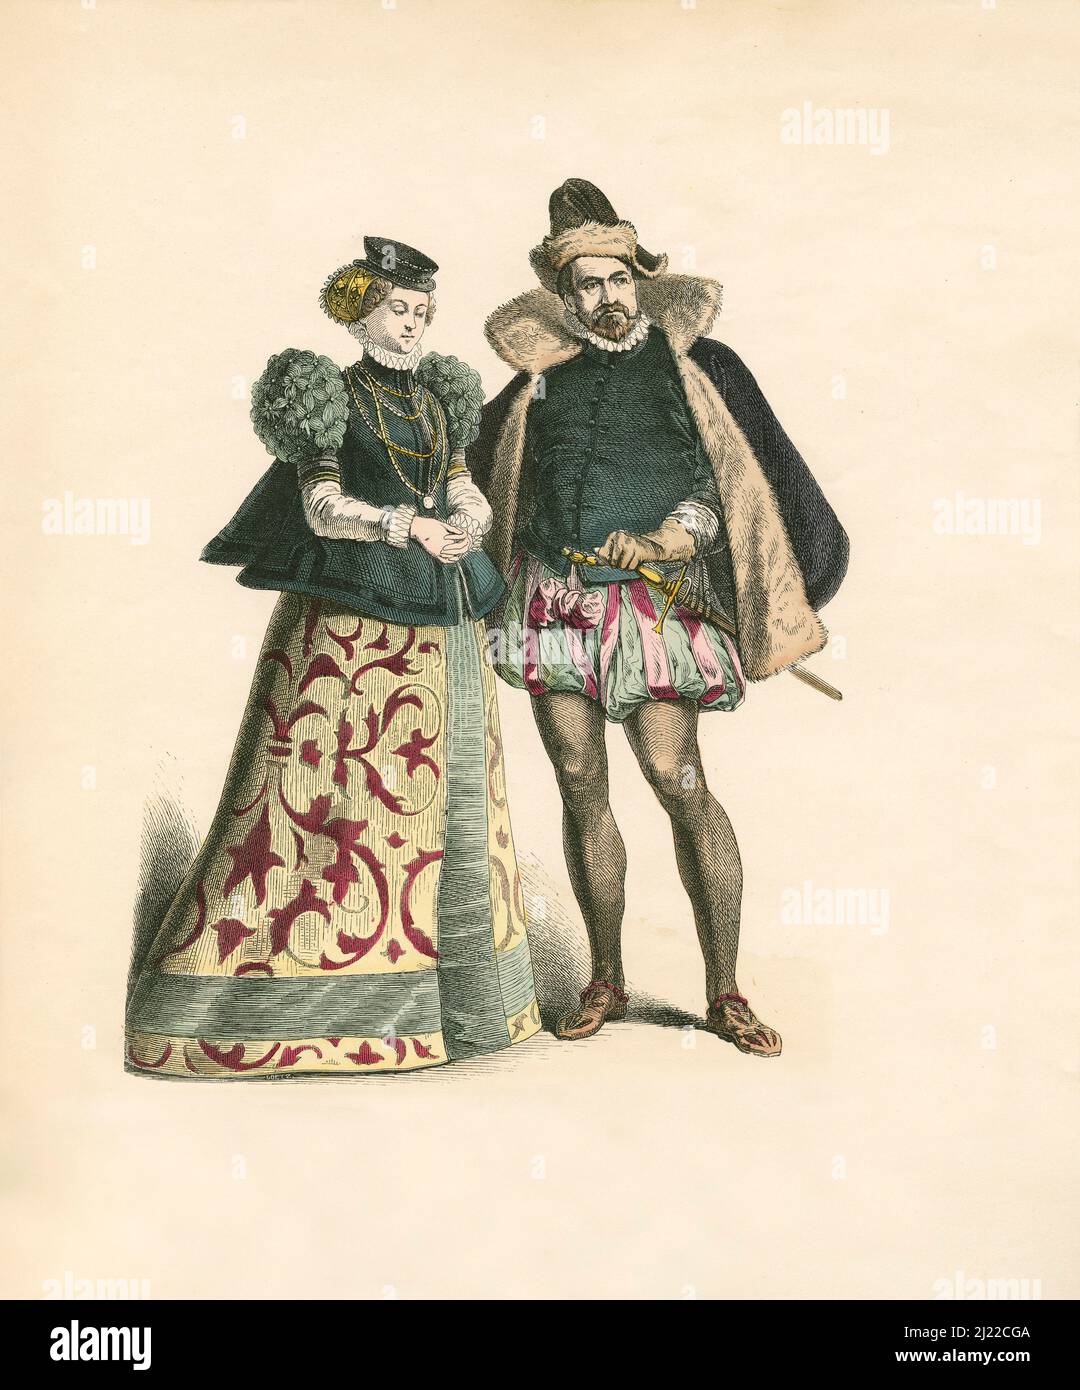 Palatinat, noblesse allemande, dernier tiers du 16th siècle, Illustration, l'histoire du costume, Braun & Schneider, Munich, Allemagne, 1861-1880 Banque D'Images